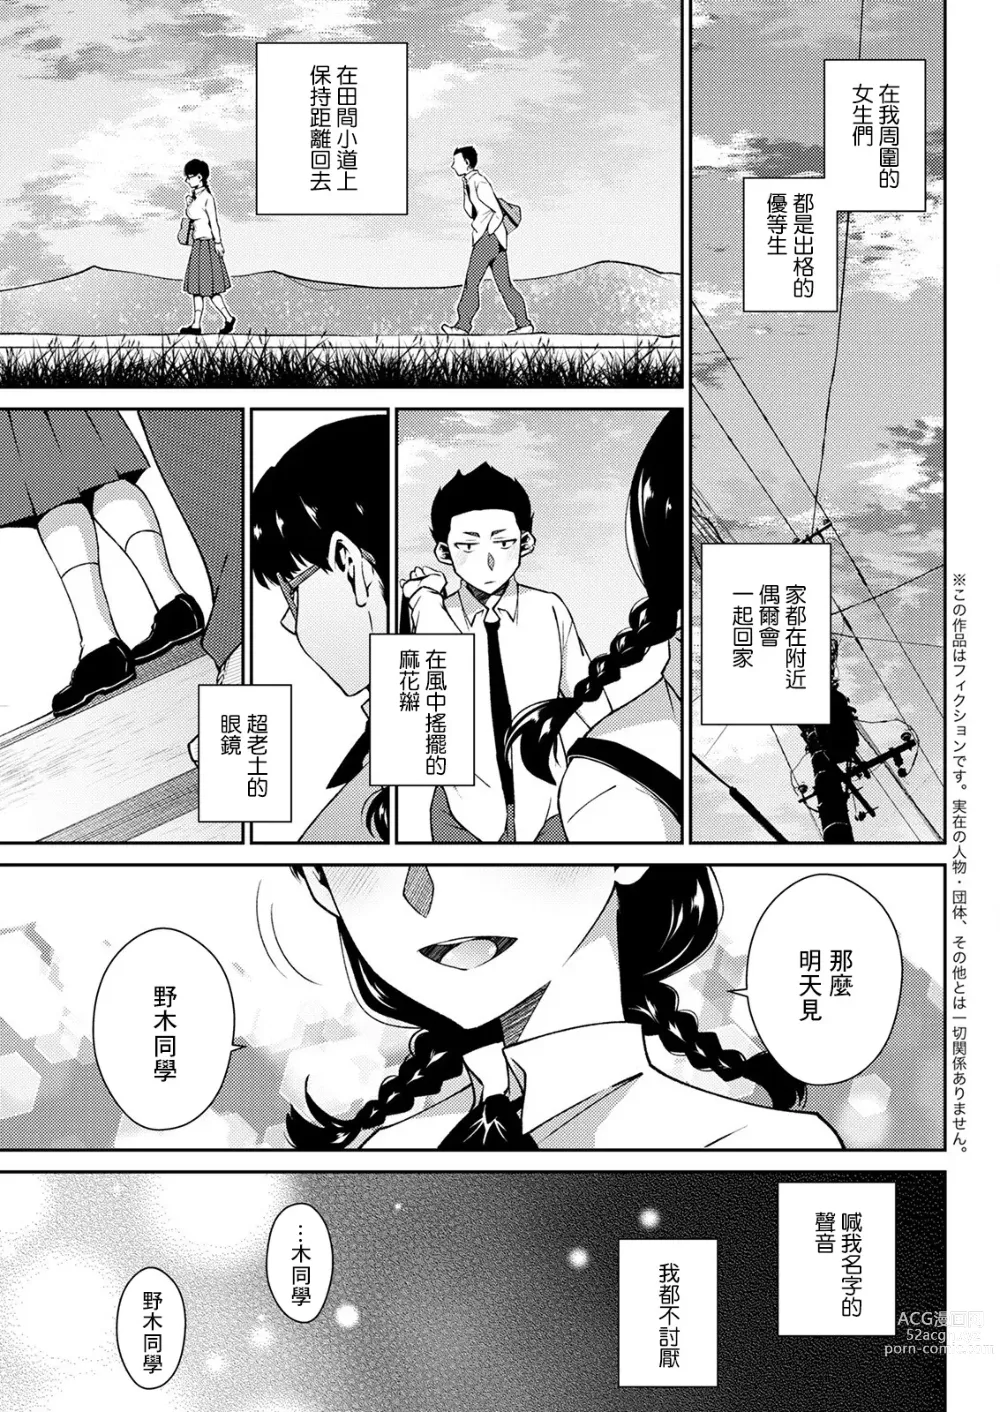 Page 3 of manga Junjou Mahoroba